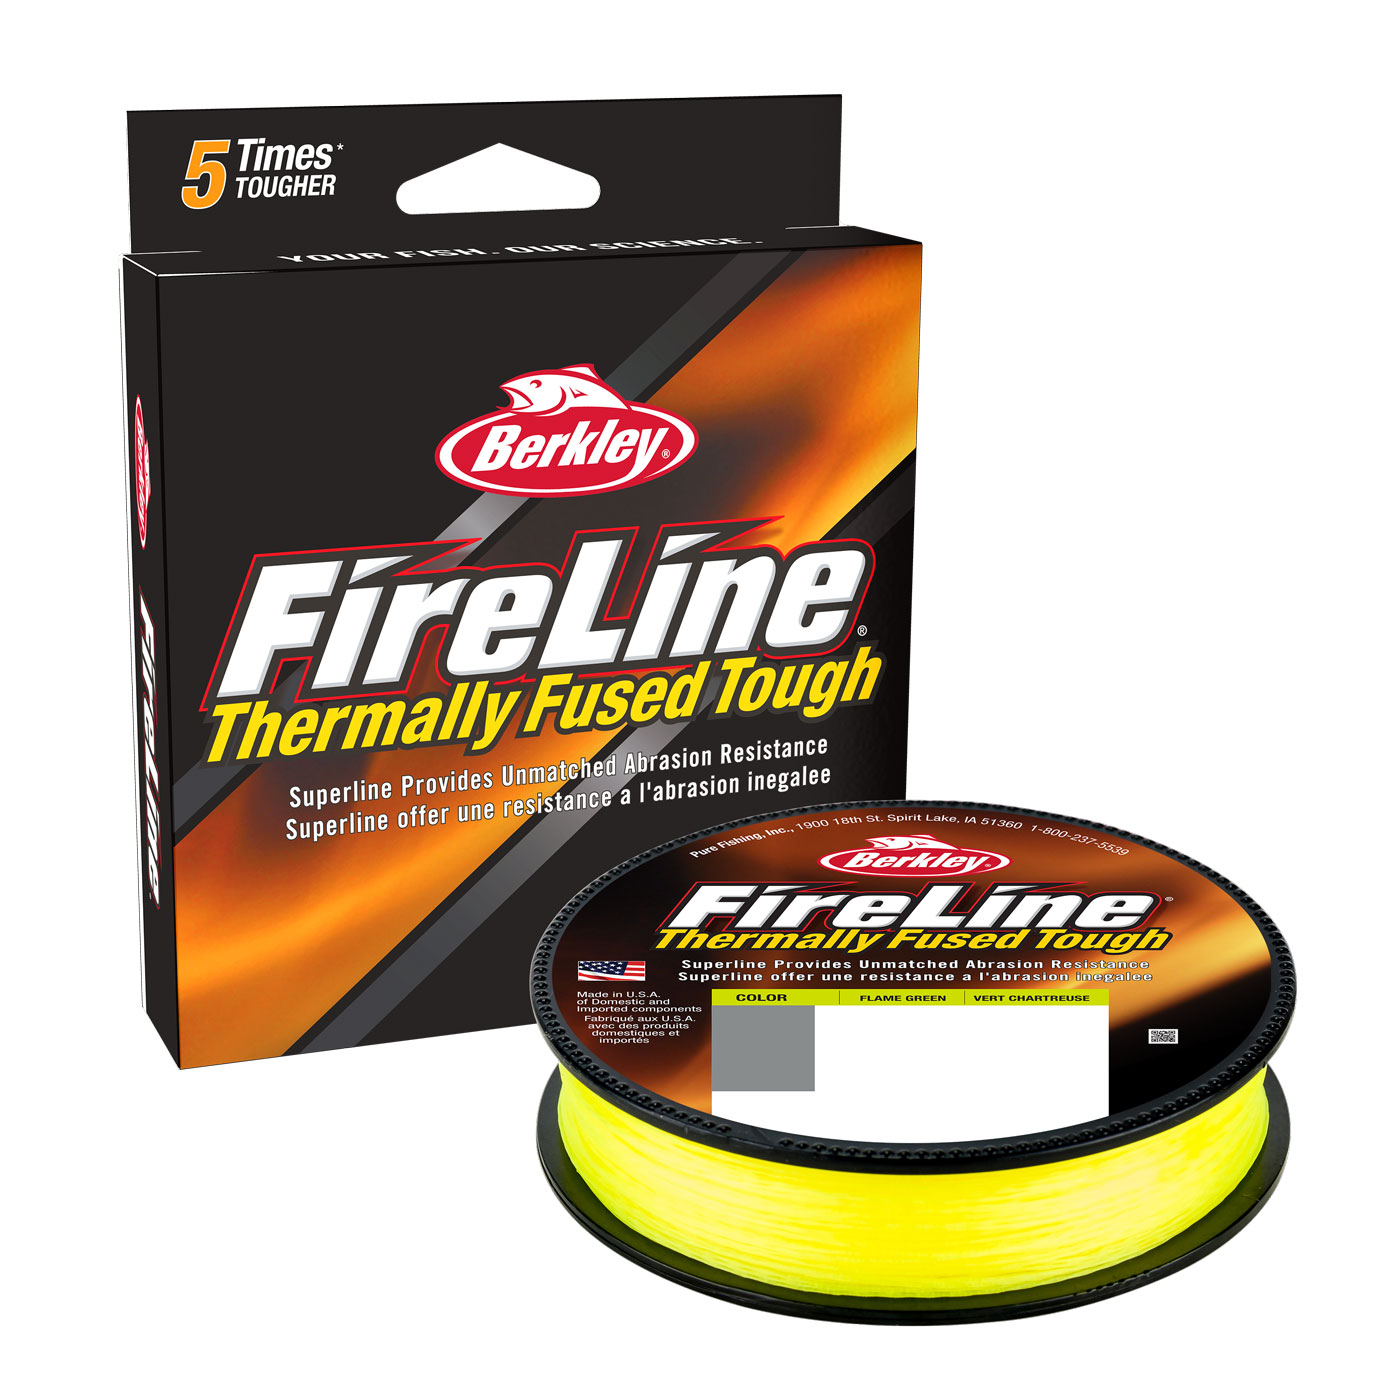 Berkley Fireline 150m, Flame Green